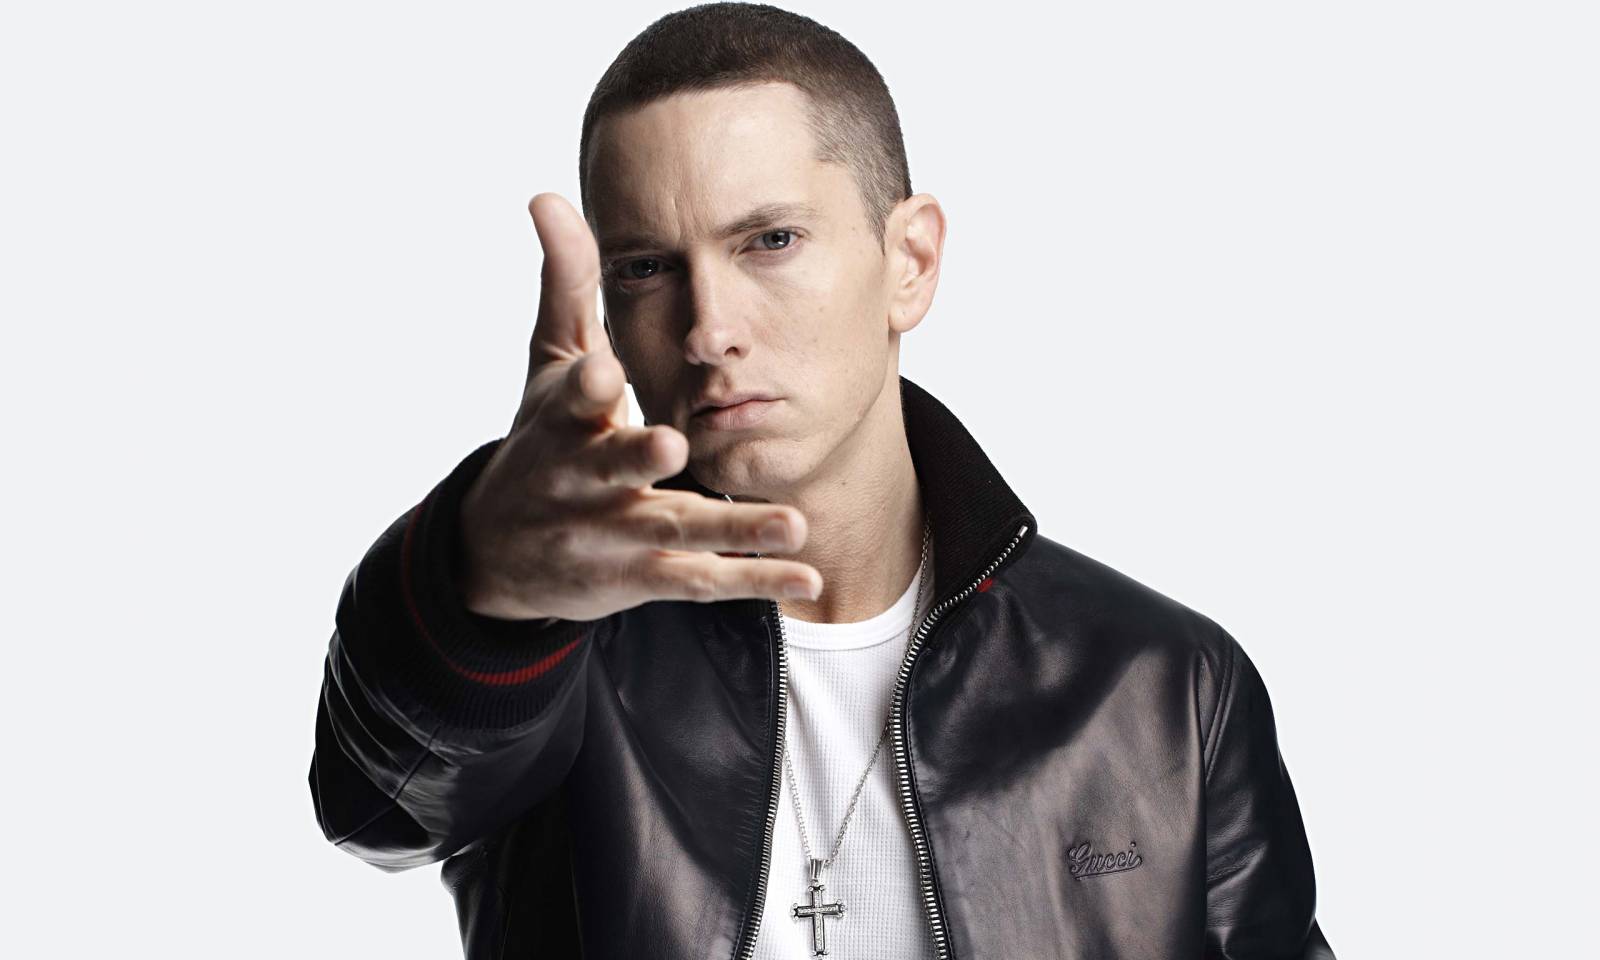 RECENZE: Eminem se na novince Revival odepisuje hned na začátku 